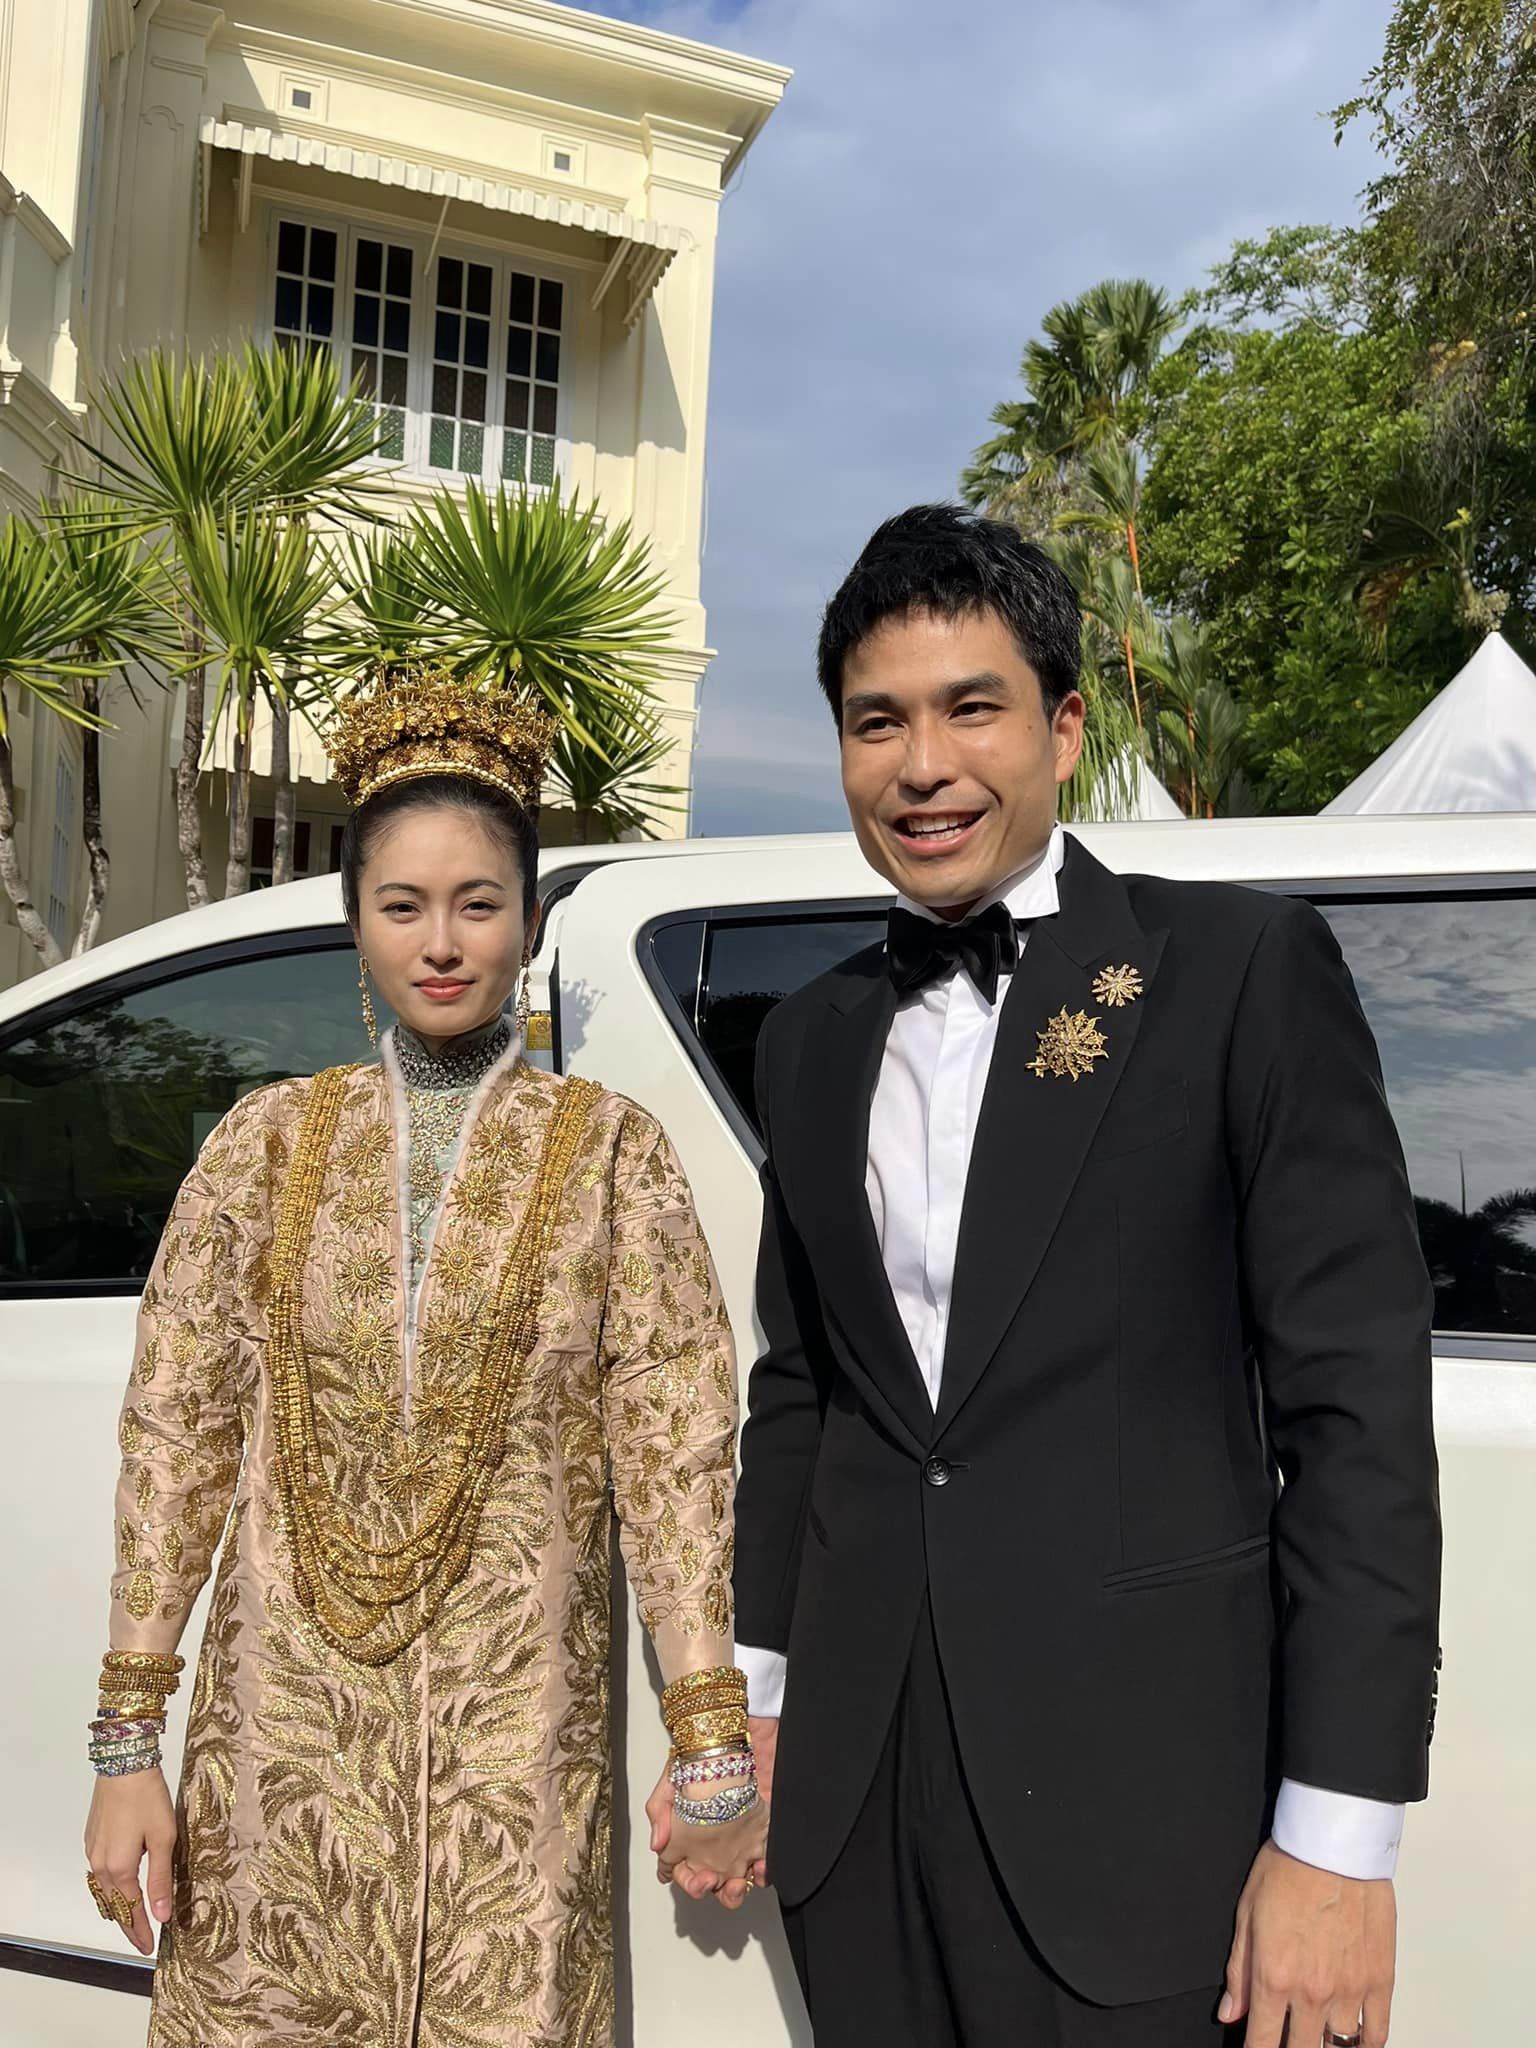 Đám cưới trong mơ của 'mỹ nhân chuyển giới đẹp nhất Thái Lan' Nong Poy: Cô dâu đội vương miện bằng vàng hạnh phúc cùng chú rể bước vào hôn lễ - Ảnh 2.